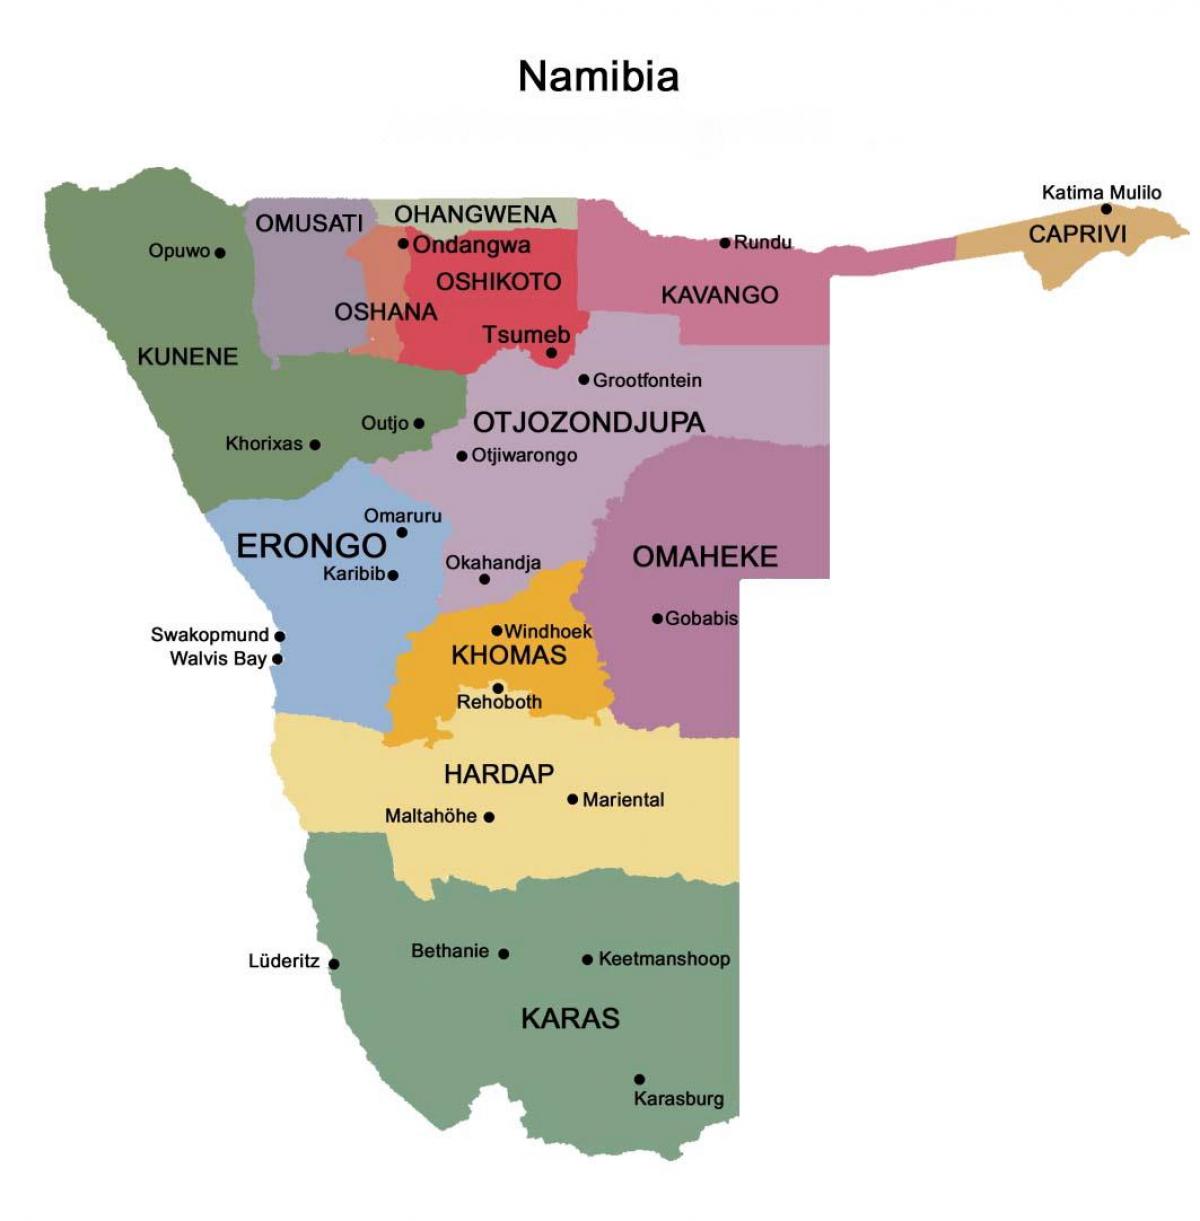 Χάρτης της Ναμίμπια με τις περιφέρειες